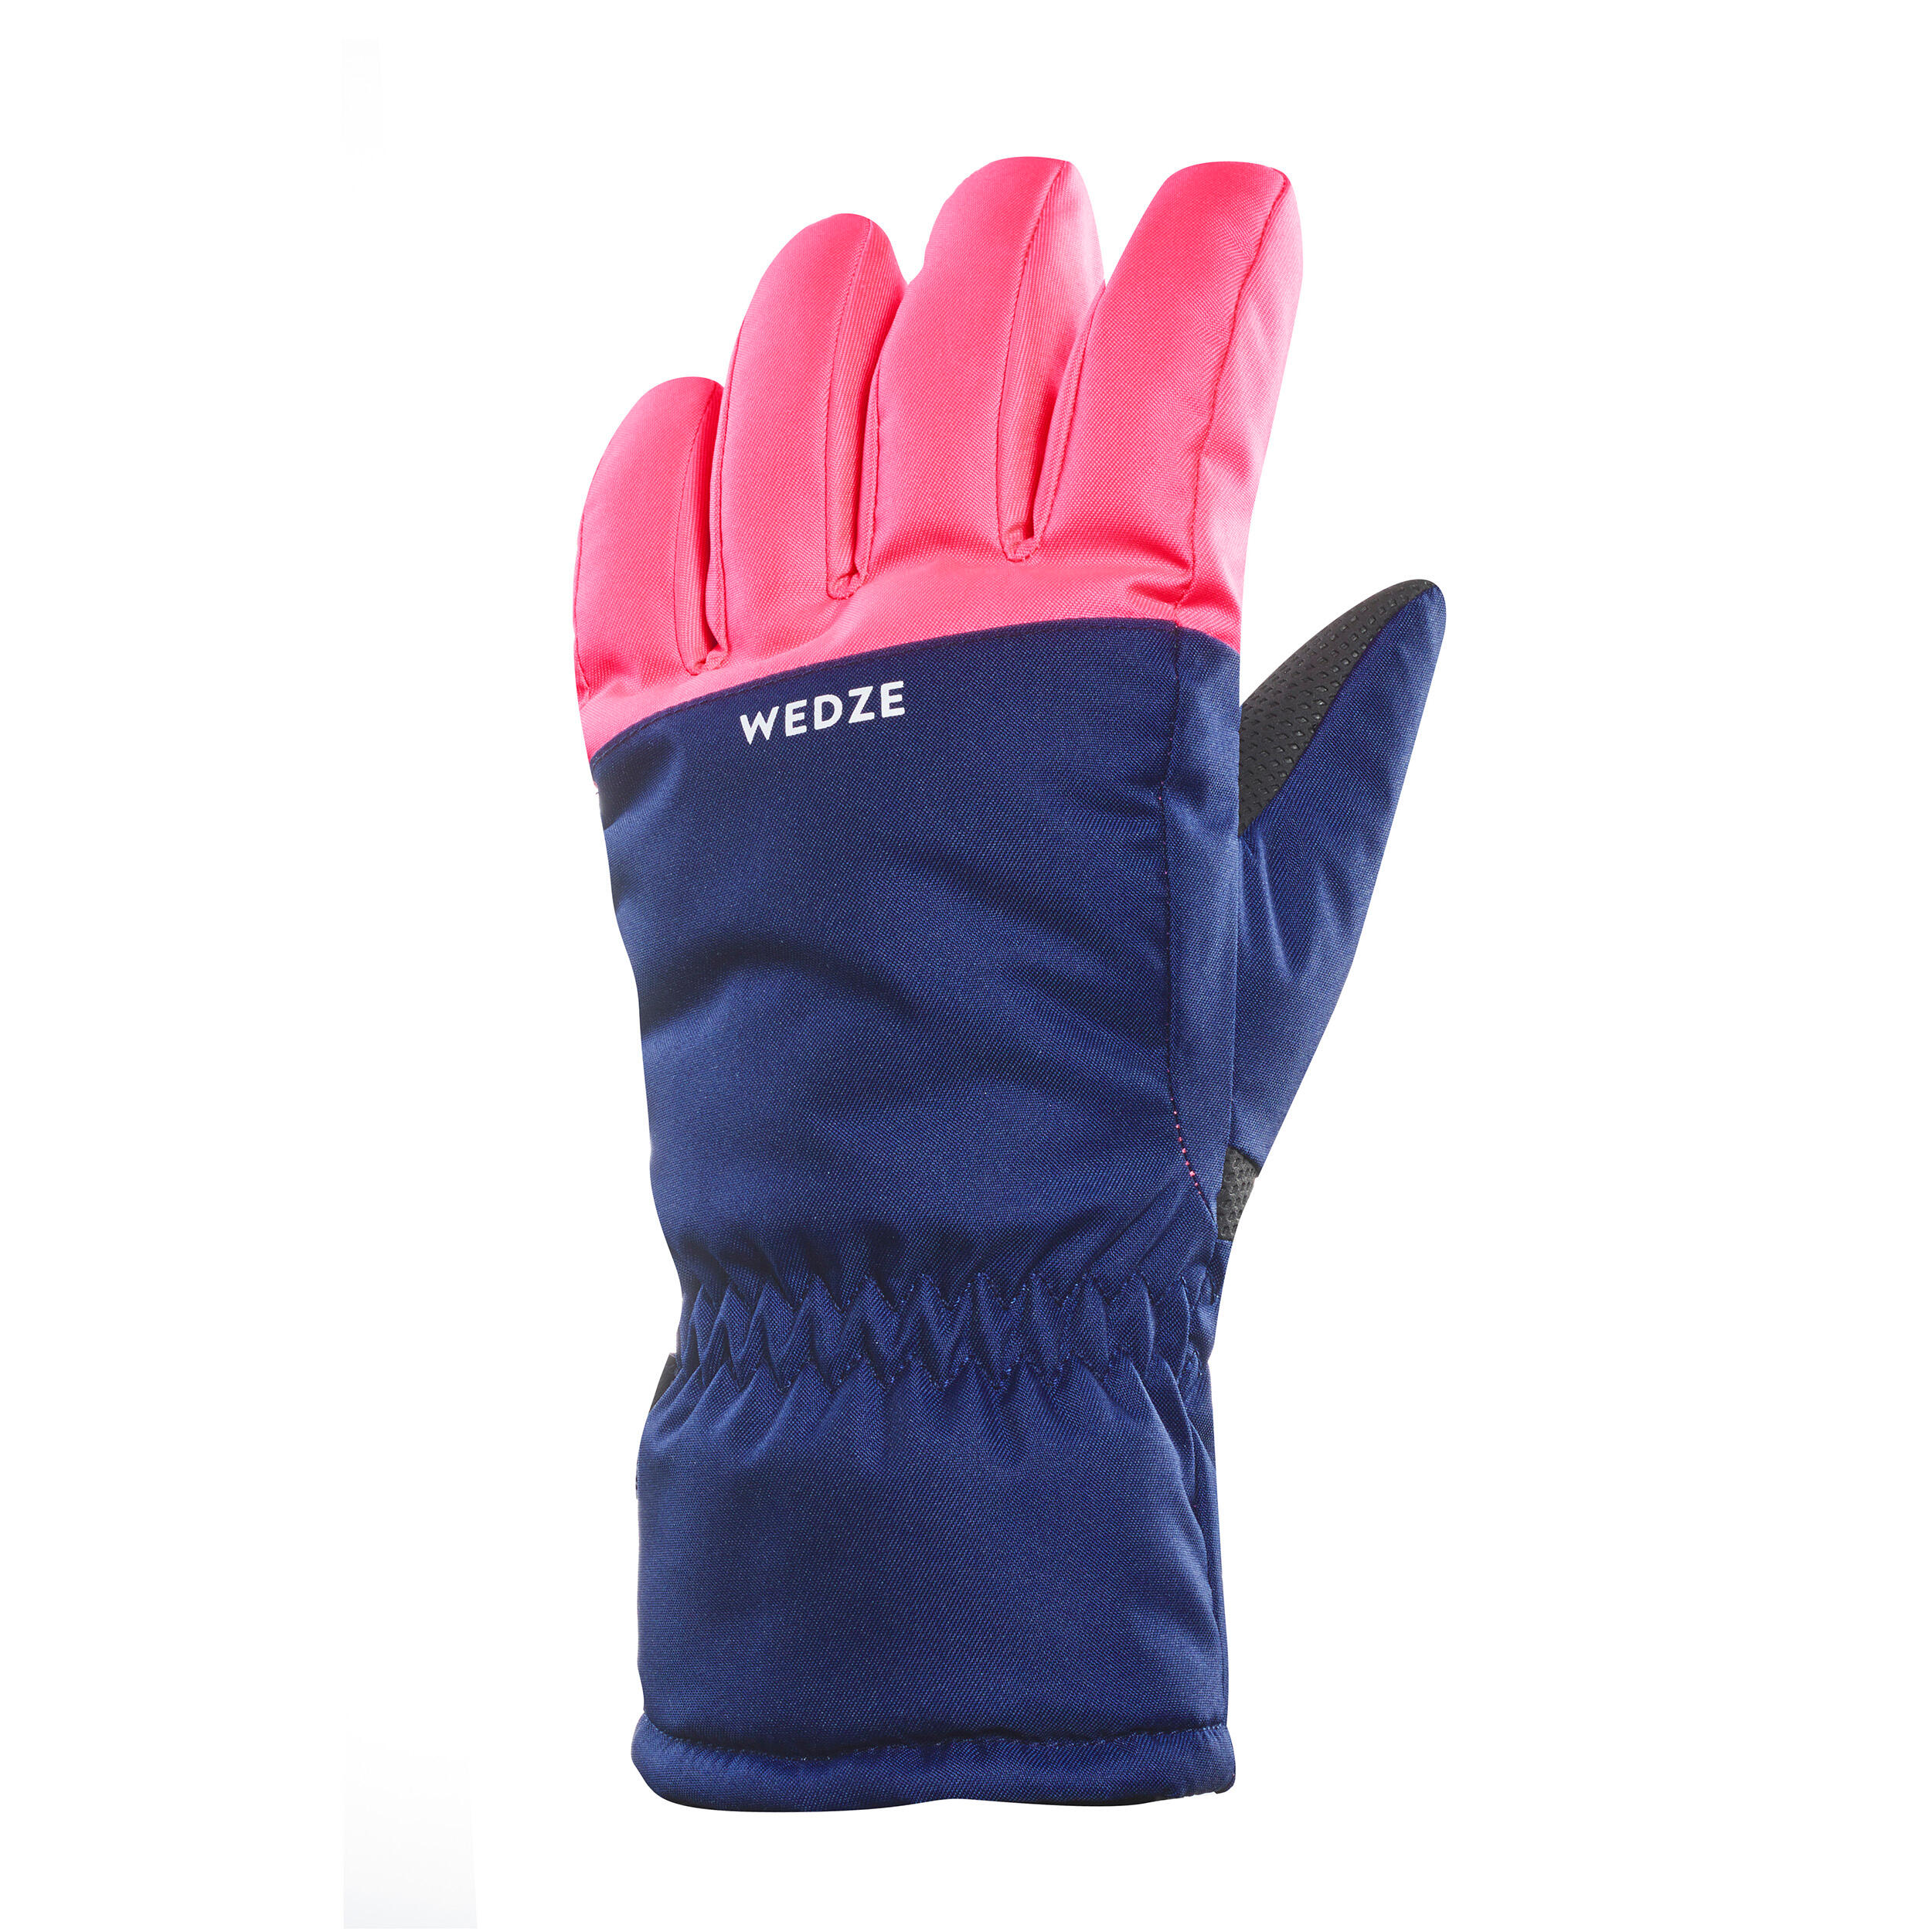 gants de ski chauds et imperméables enfant - 100 bleu et rose fluo - wedze